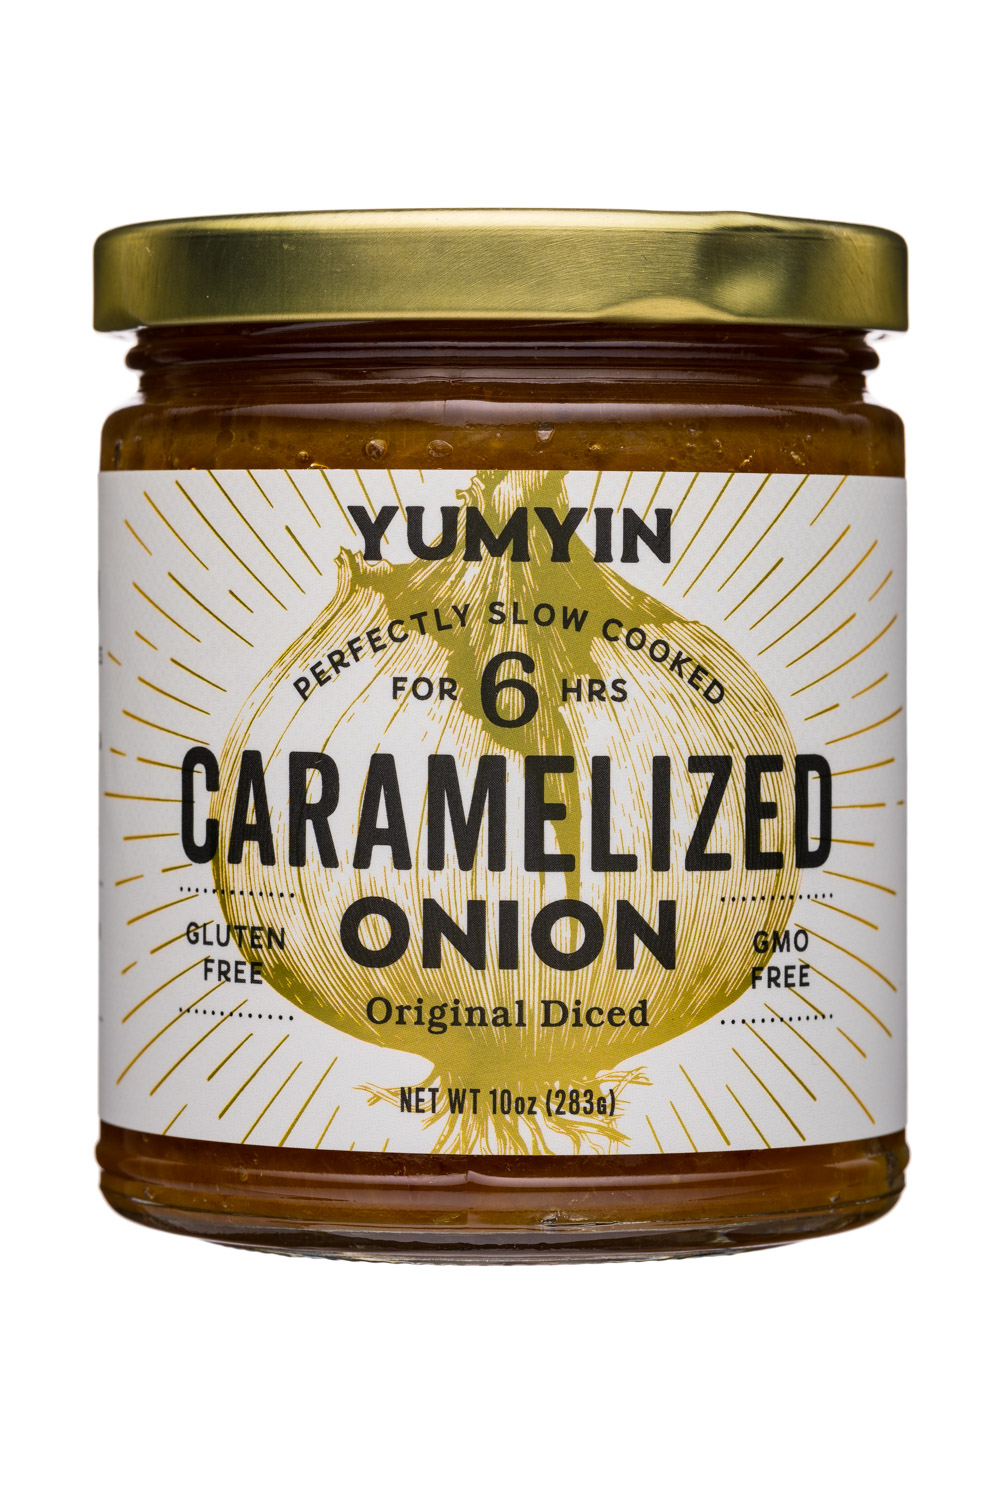 Caramelized Onion - Original Diced